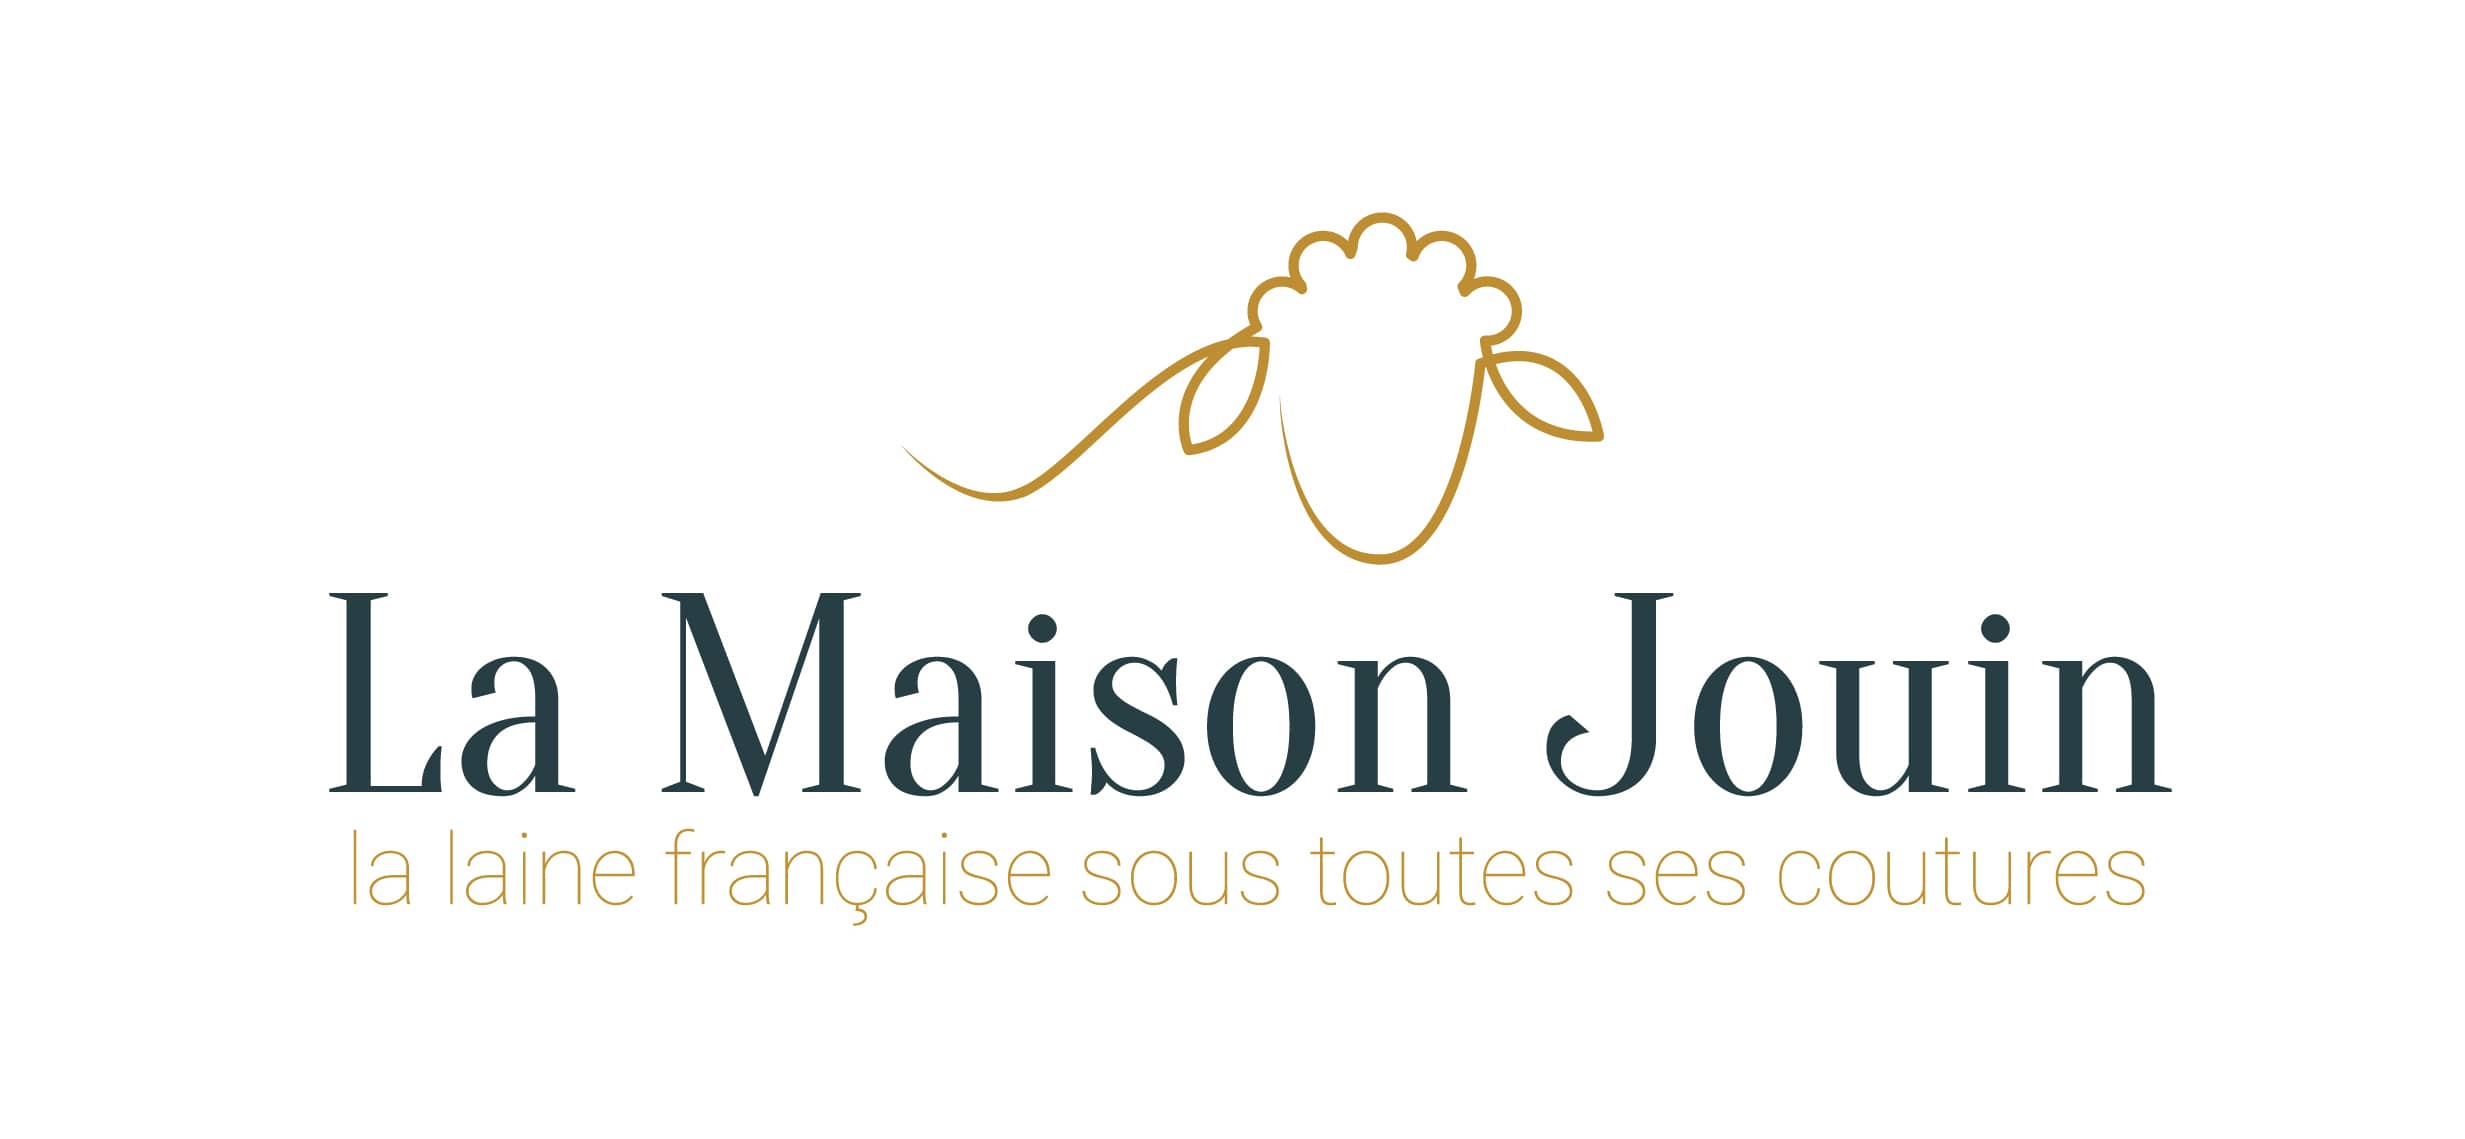 La maison Jouin logo, graphitéine Limoges agence